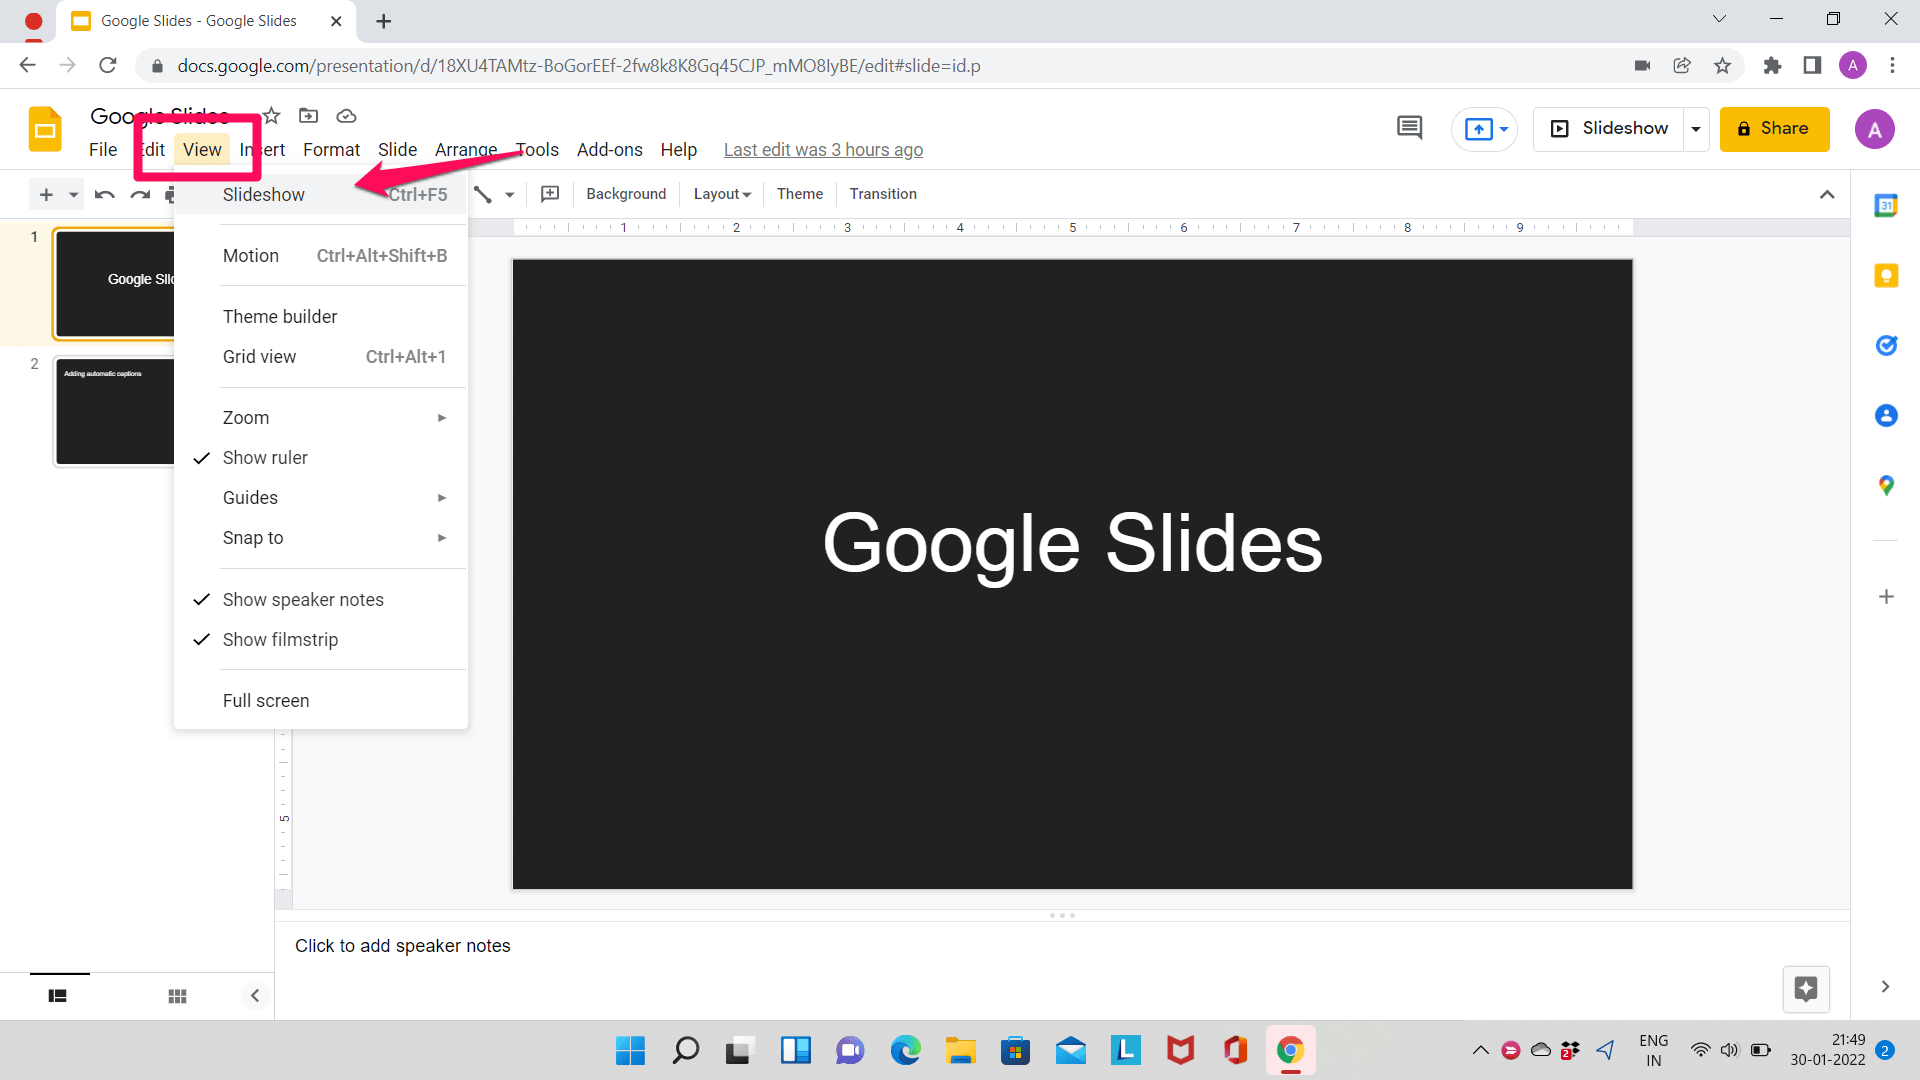 Google Slides Slideshow